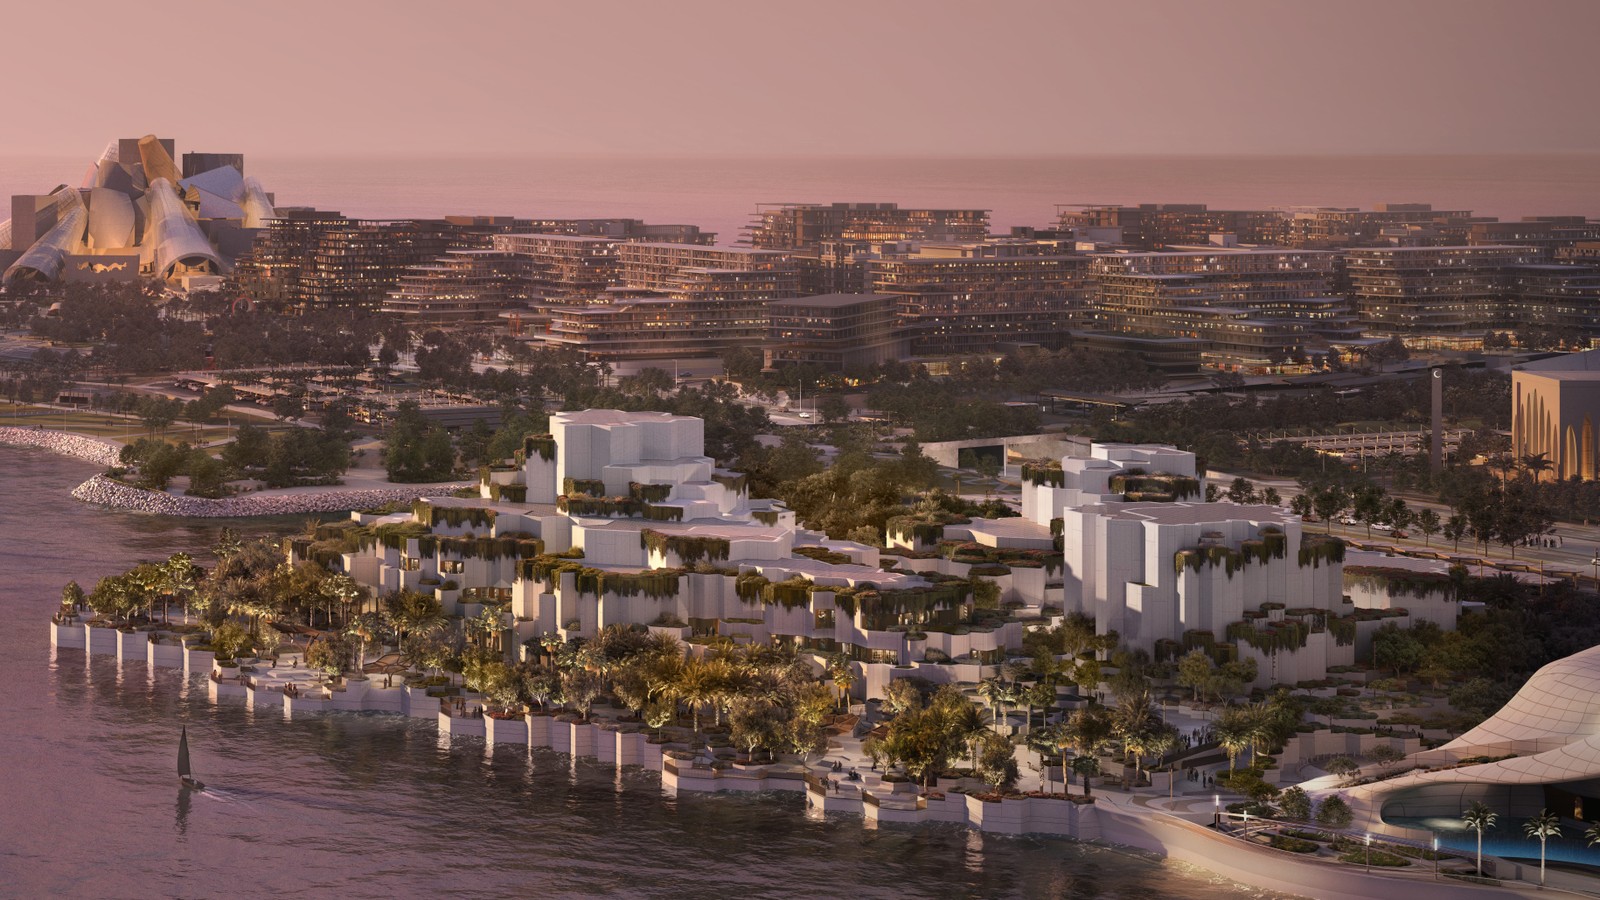 Distrito Cultural da Ilha Saadiyat, a 'ilha dos museus' de Abu Dhabi, nos Emirados Árabes Unidos. Imagem mostra como será o futuro Museu de História Natural de Abu Dhabi. — Foto: Divulgação / Departamento de Turismo de Abu Dhabi